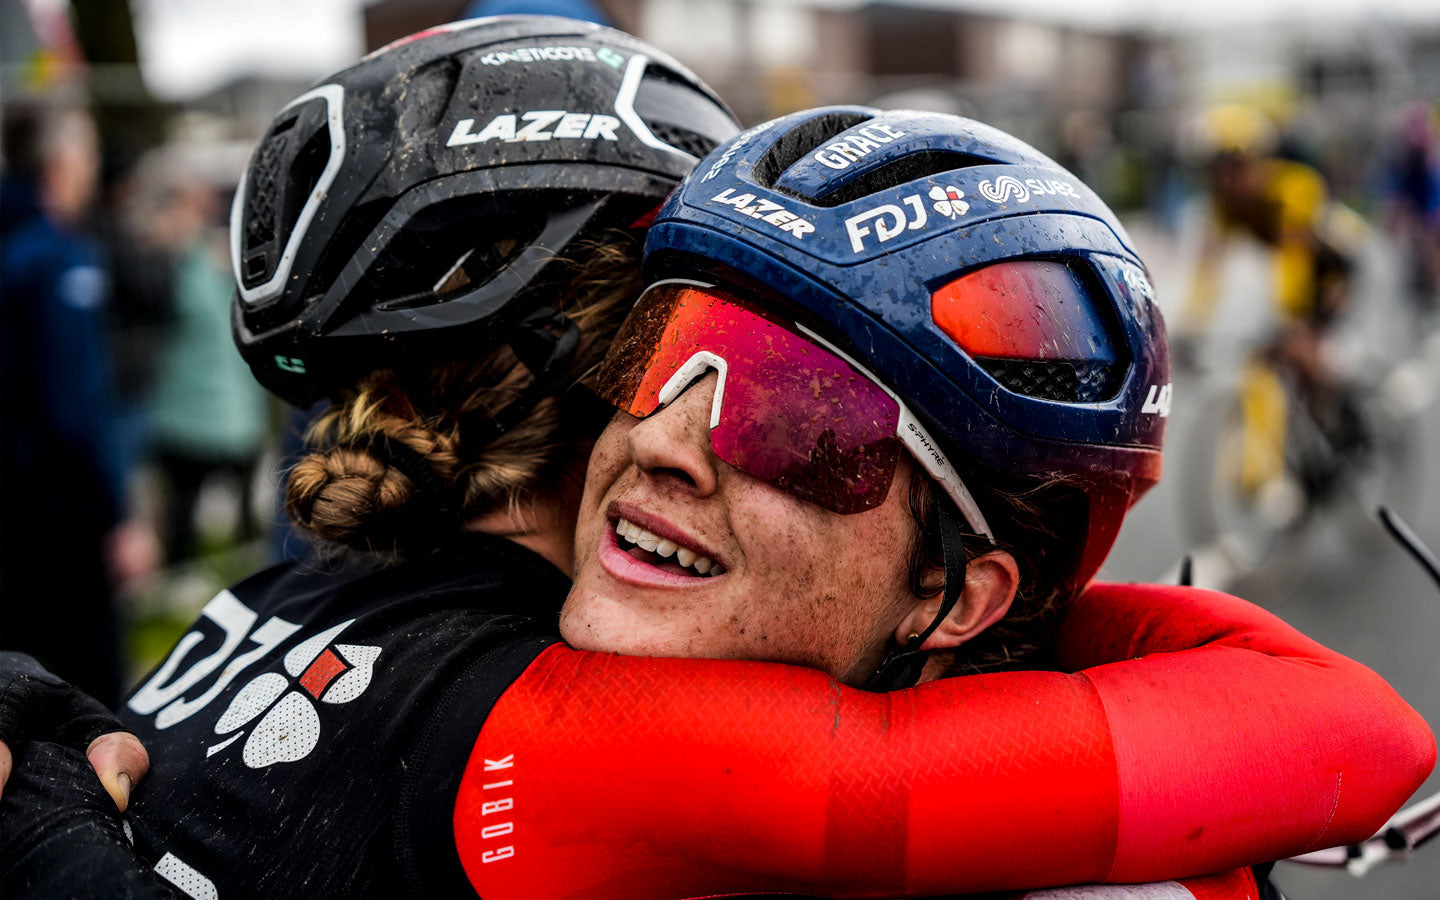 Zwei Fahrerinnen des FDJ-Teams Suez umarmen sich am Ende des Amstel Gold Race. Ihre schlammbedeckten Gesichter, ihre Trikots und das Lächeln auf dem Gesicht eines der beiden zeigen die Härte des Rennens und die Zufriedenheit des Siegers.